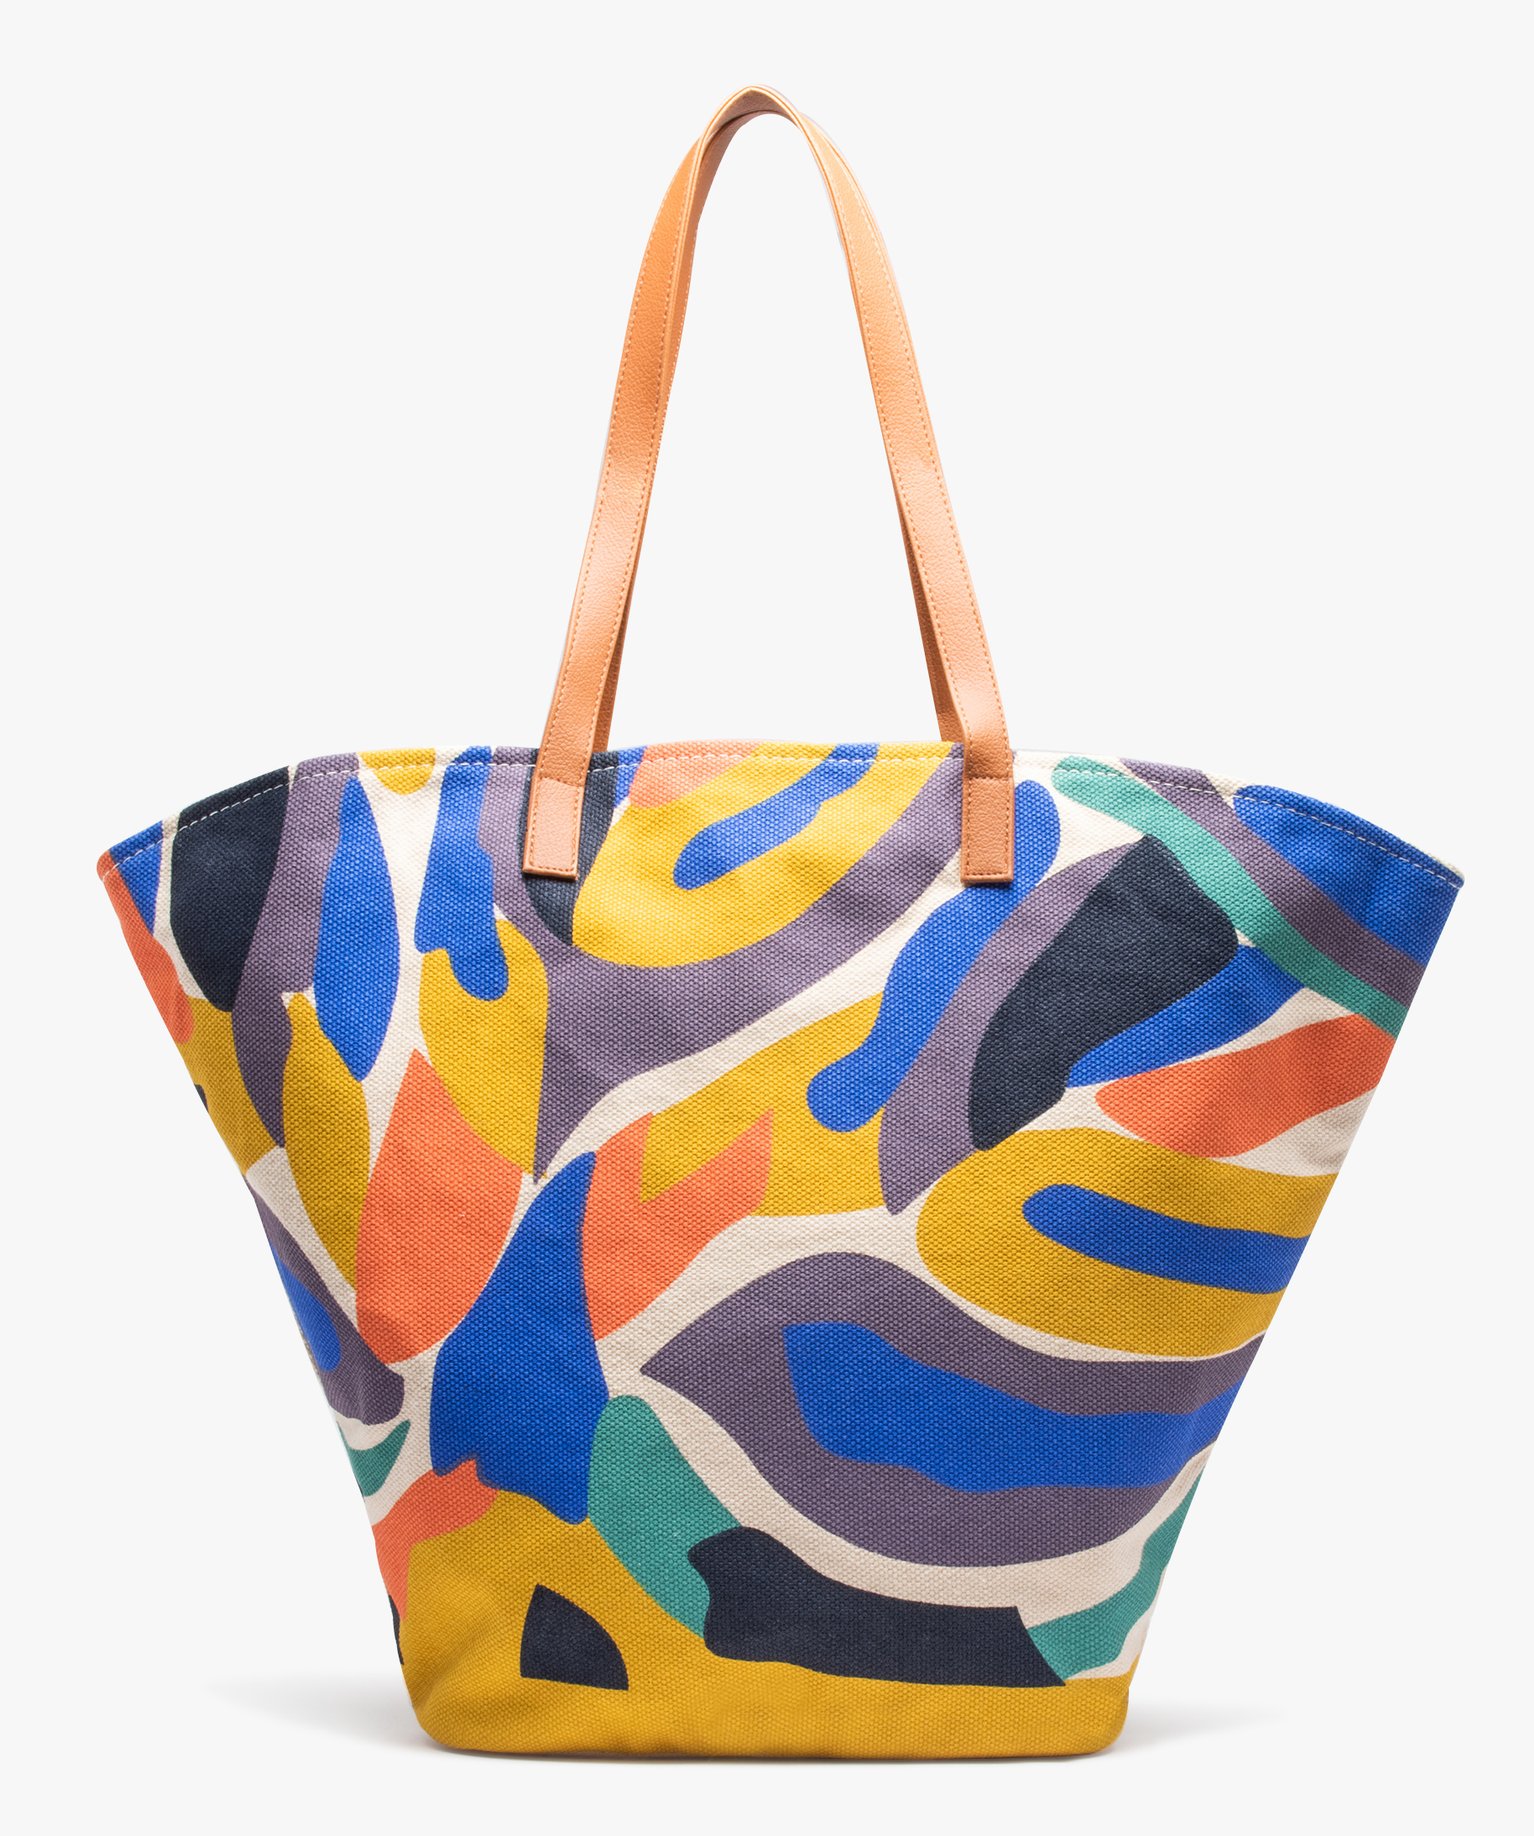 sac cabas femme en toile grand format multicolore sacs a main